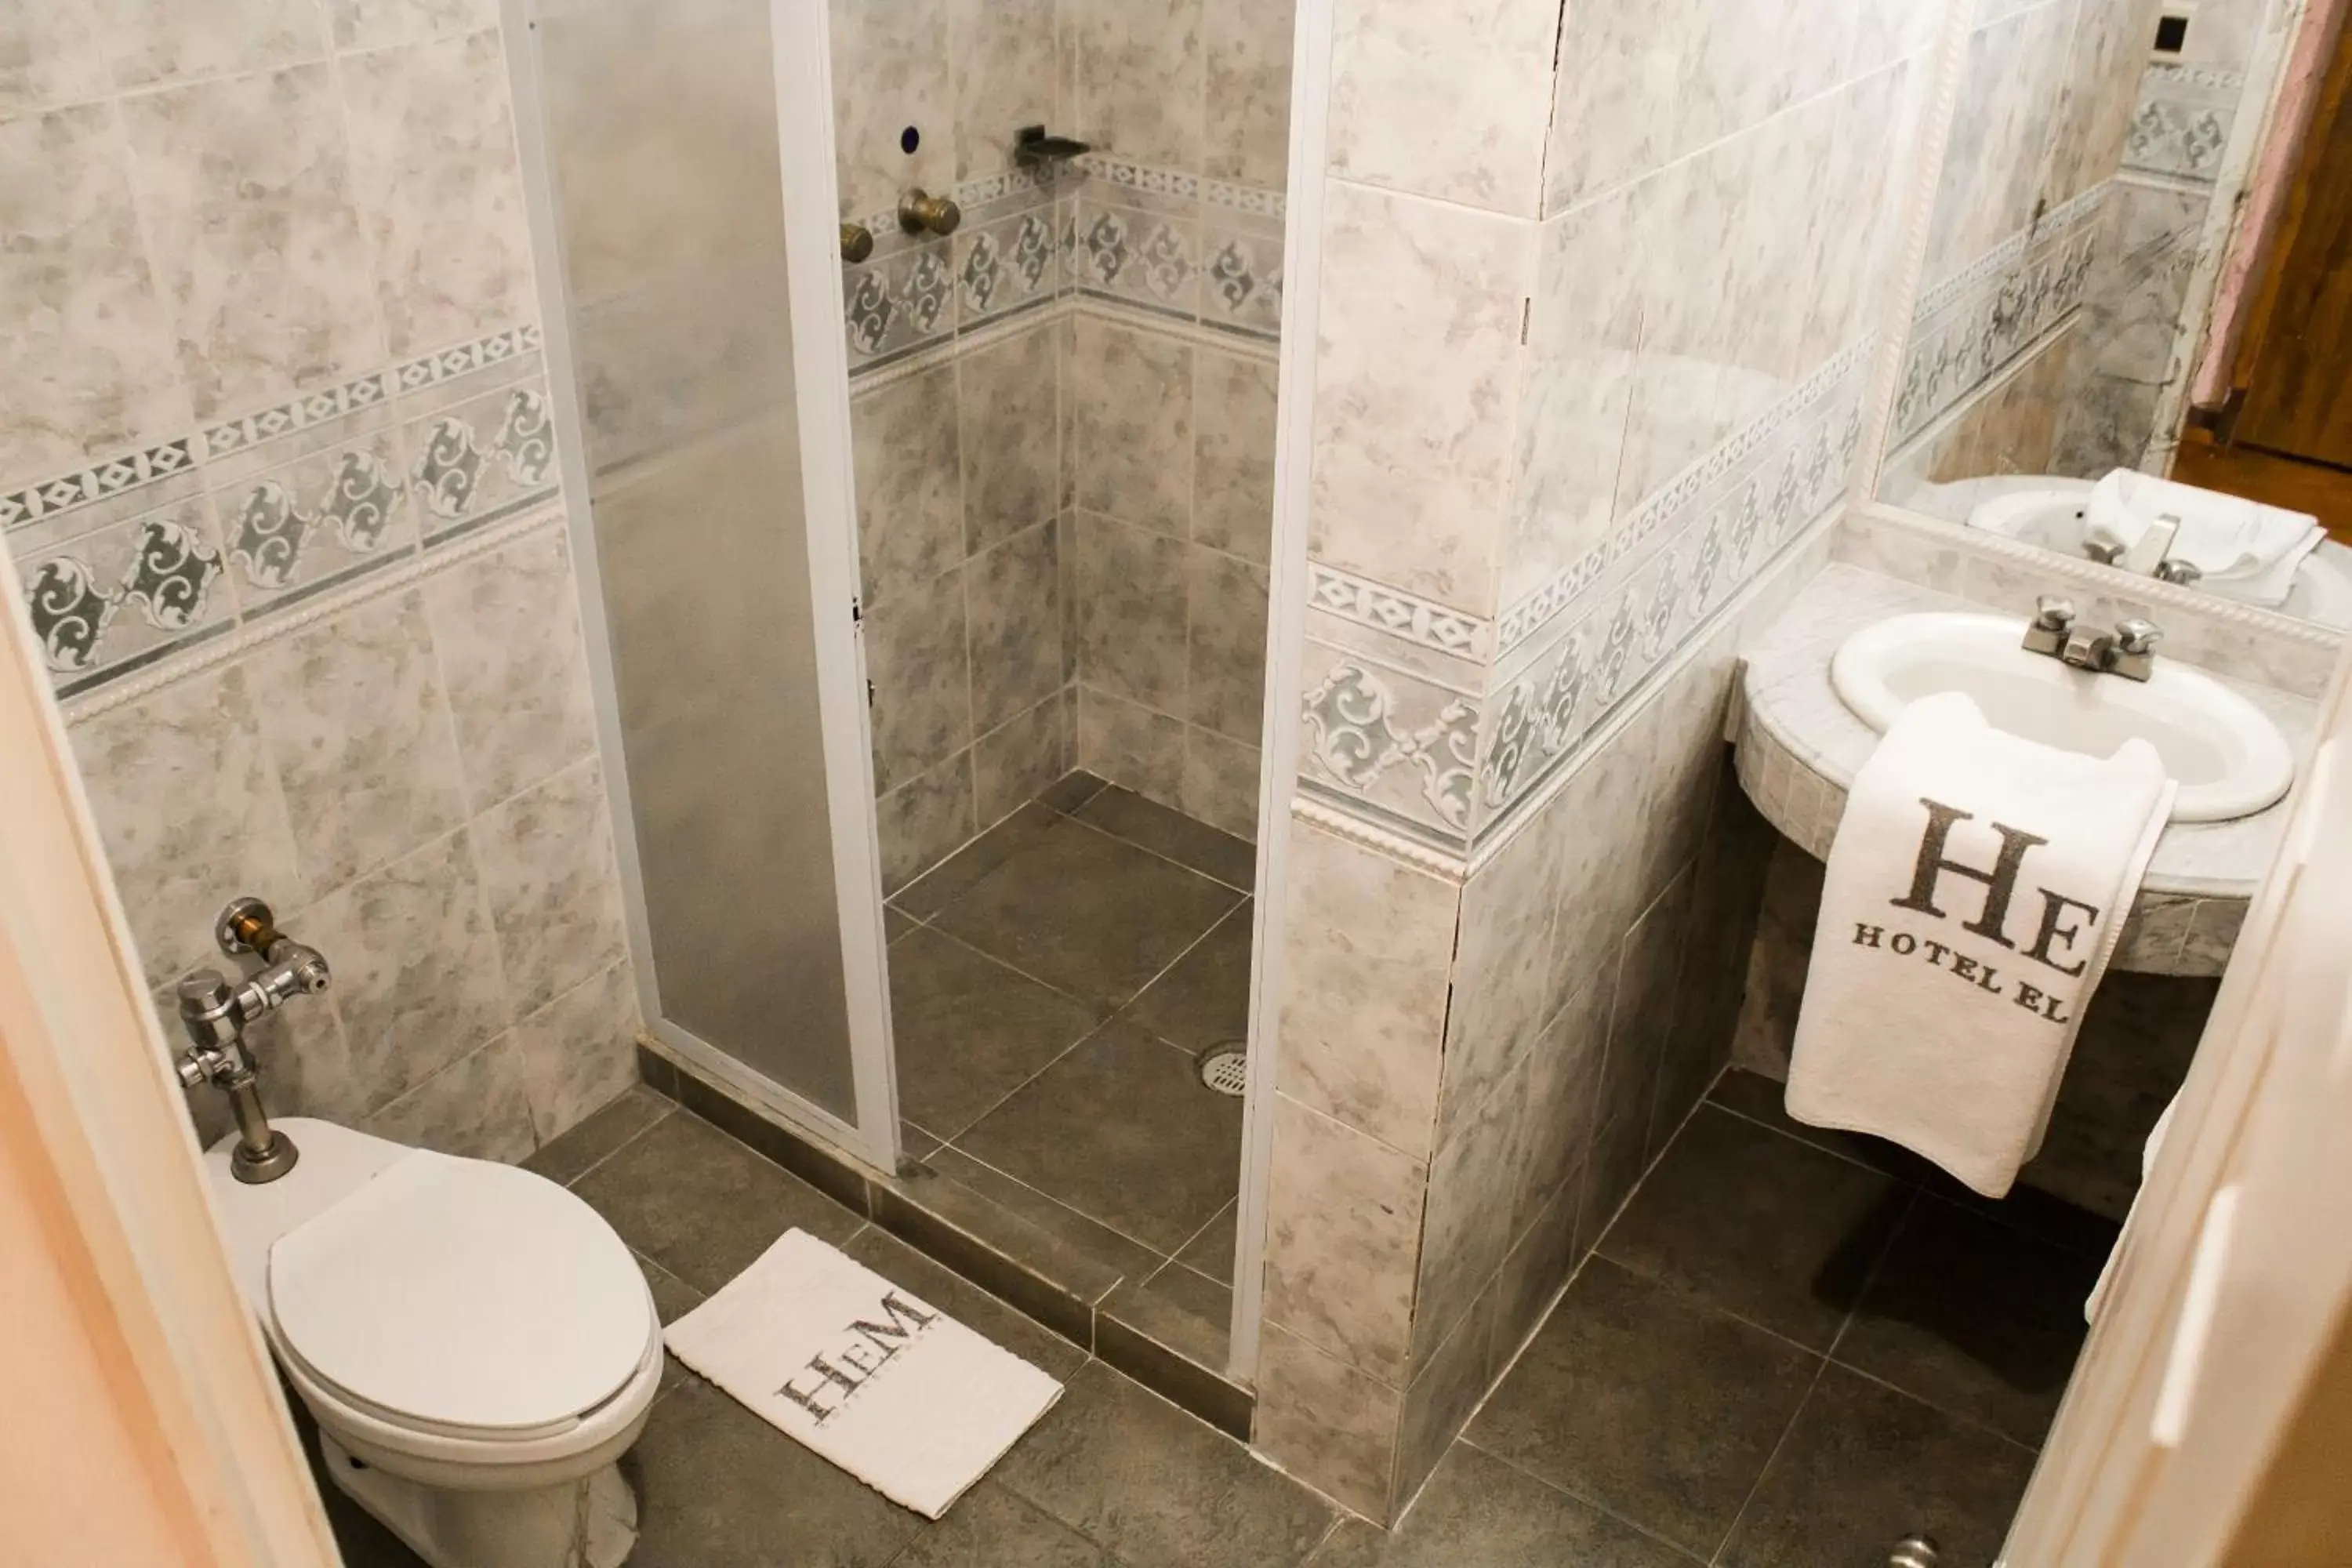 Toilet, Bathroom in Hotel El Monte